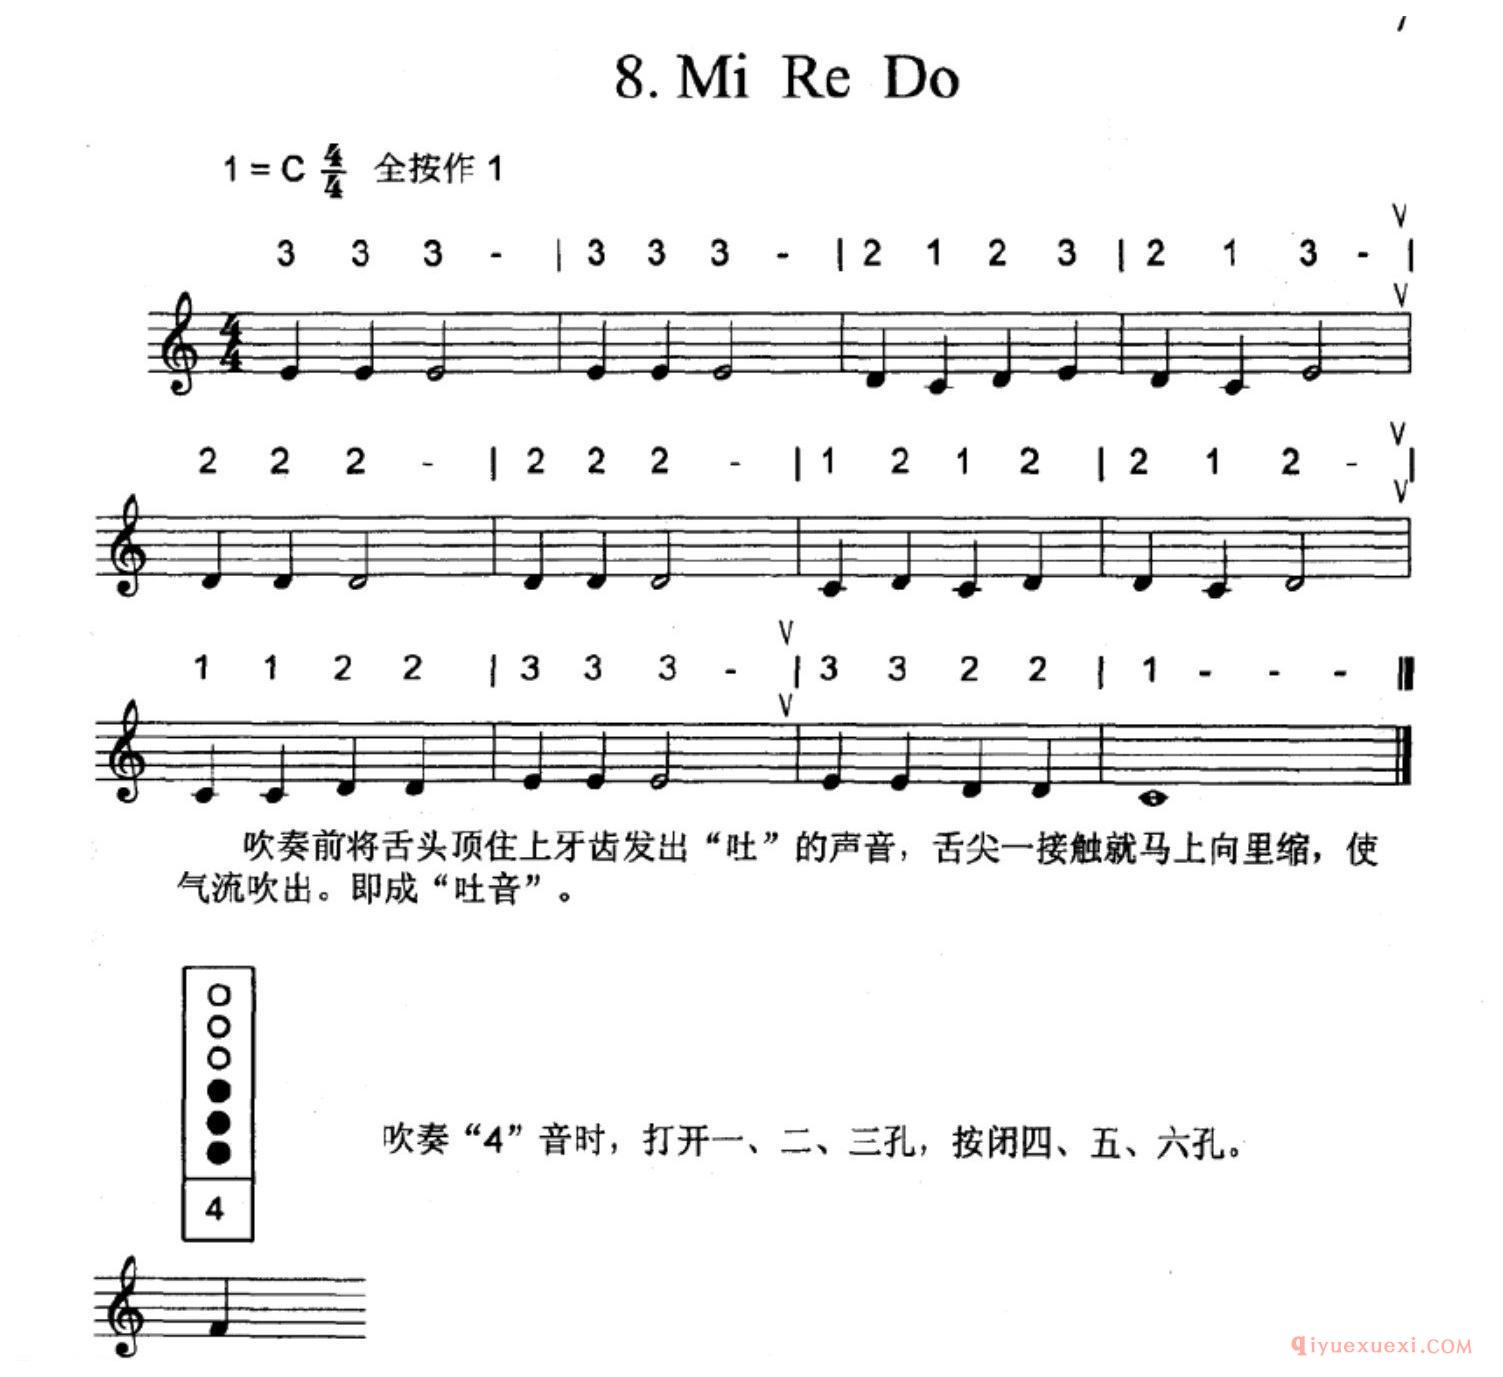 竖笛全按作1（do=C）的练习曲：Mi Re Do